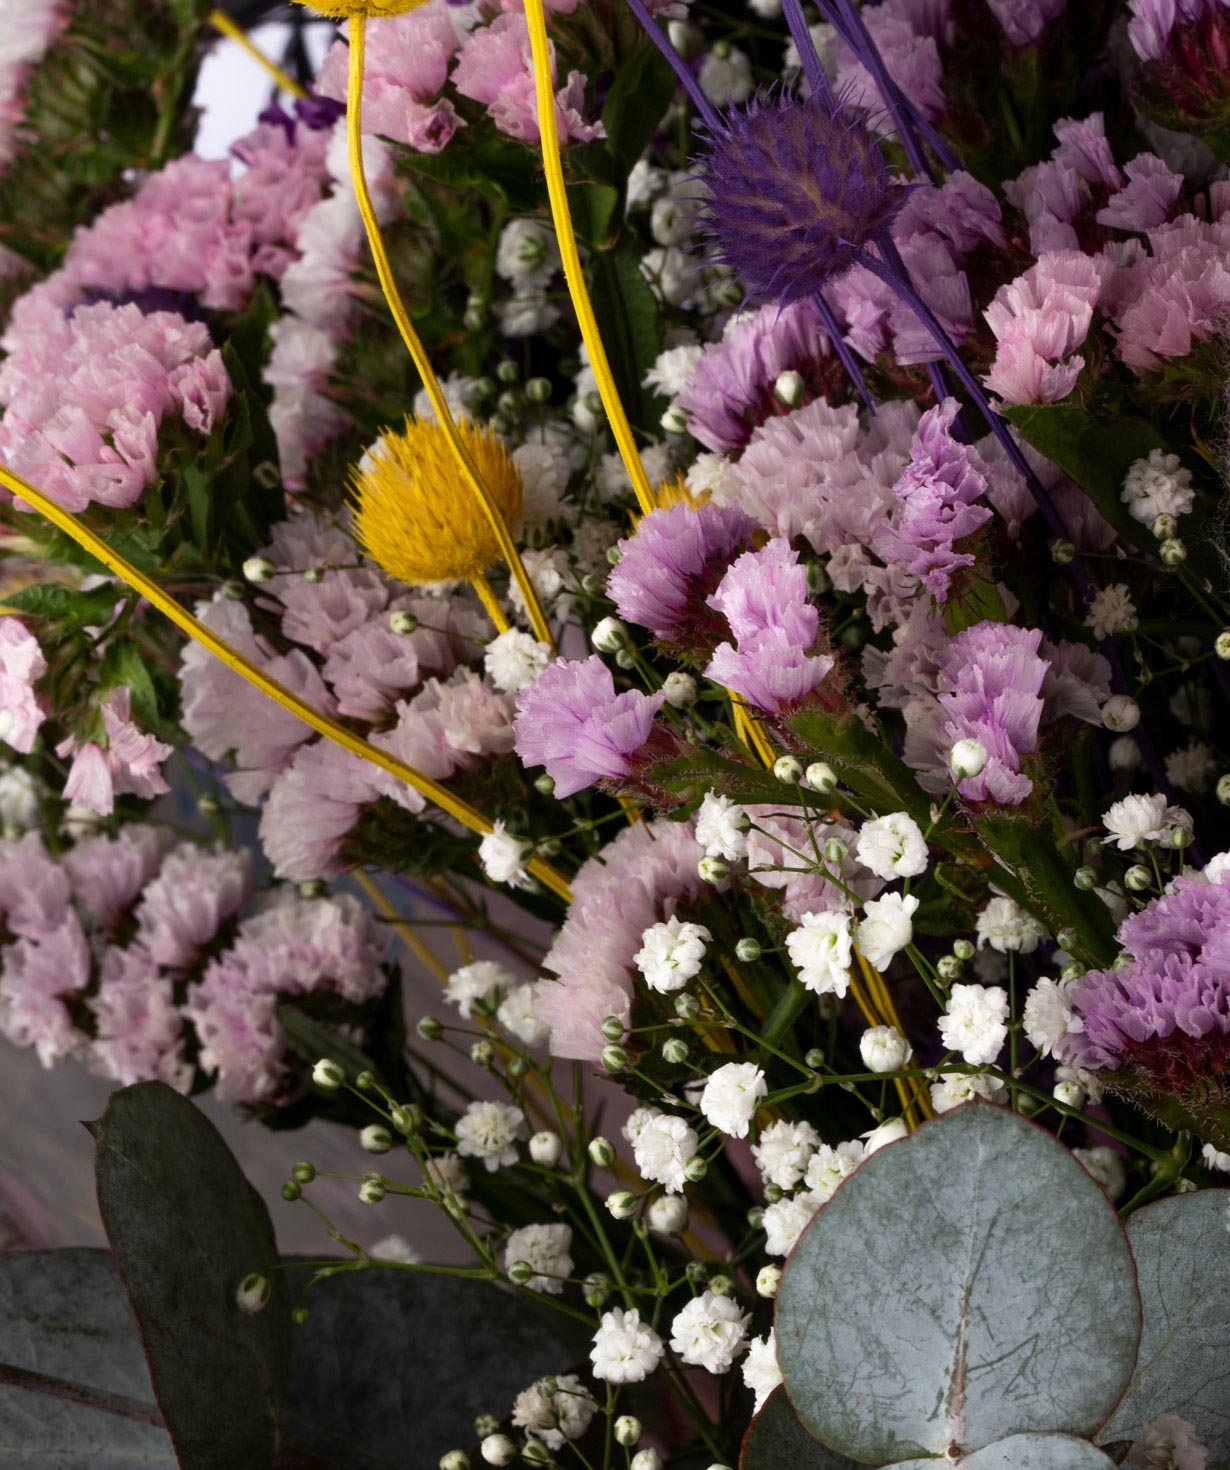 Bouquet `Celaya` with field flowers